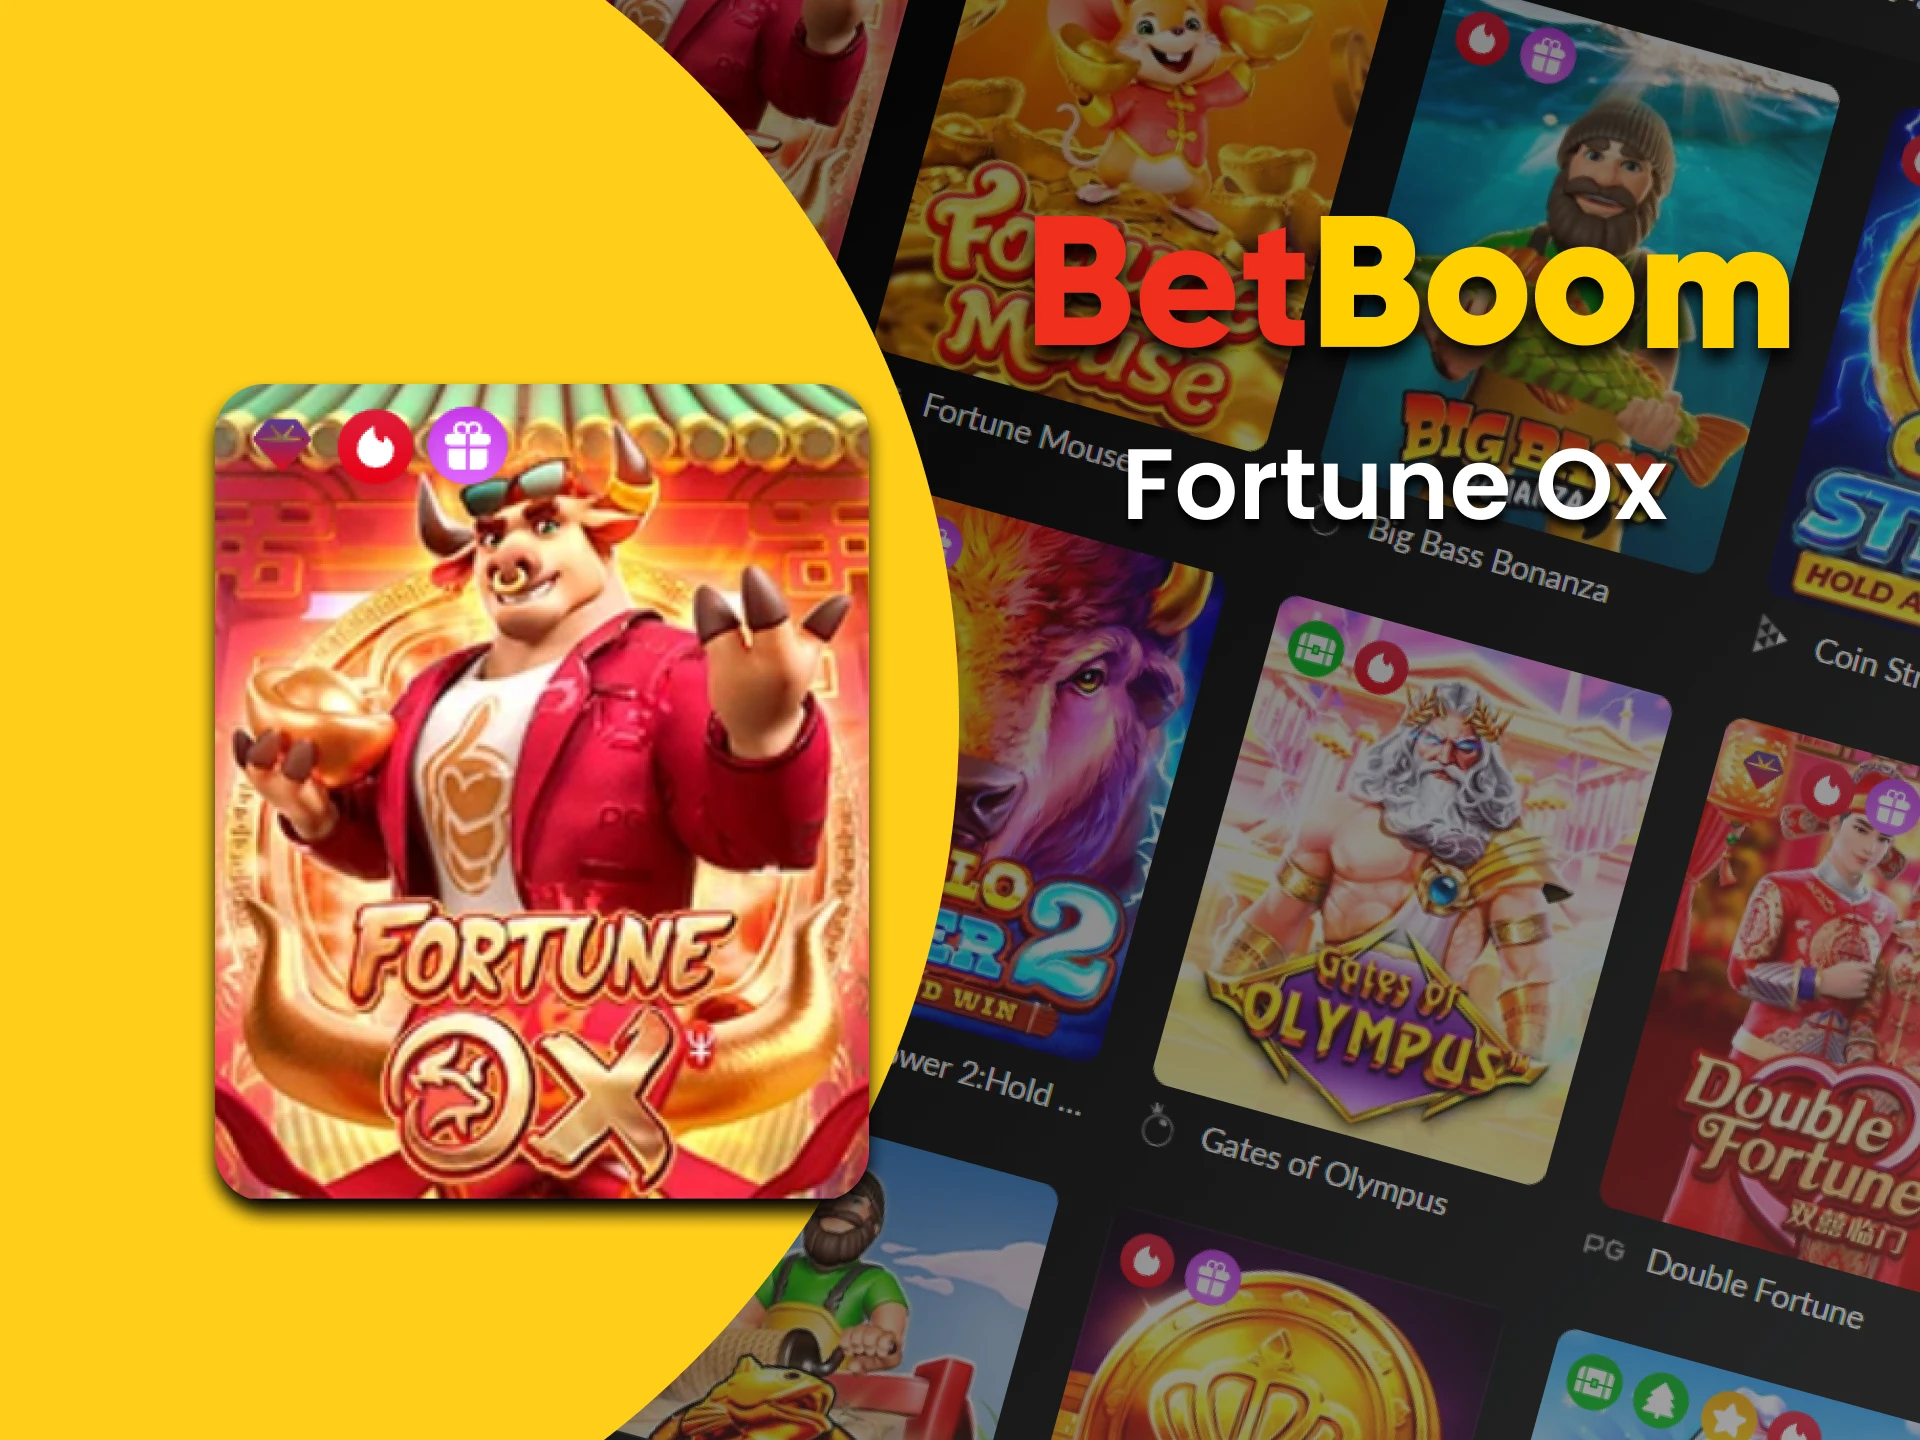 Vá para a seção de slots no BetBoom para jogar Fortune Ox.